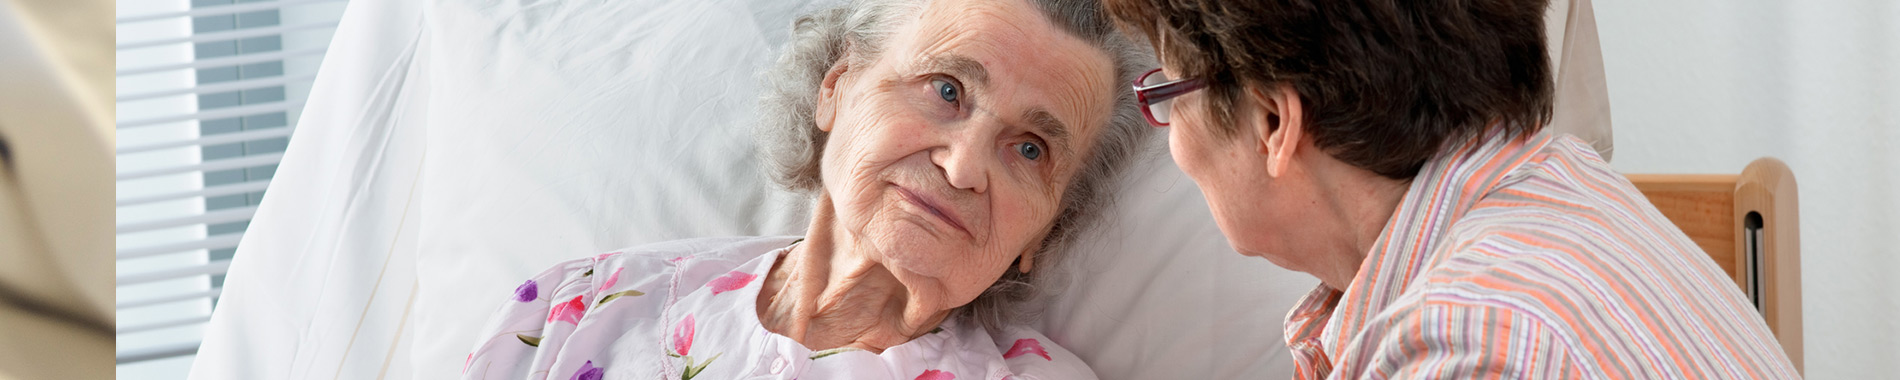 elderly woman in hospital bed